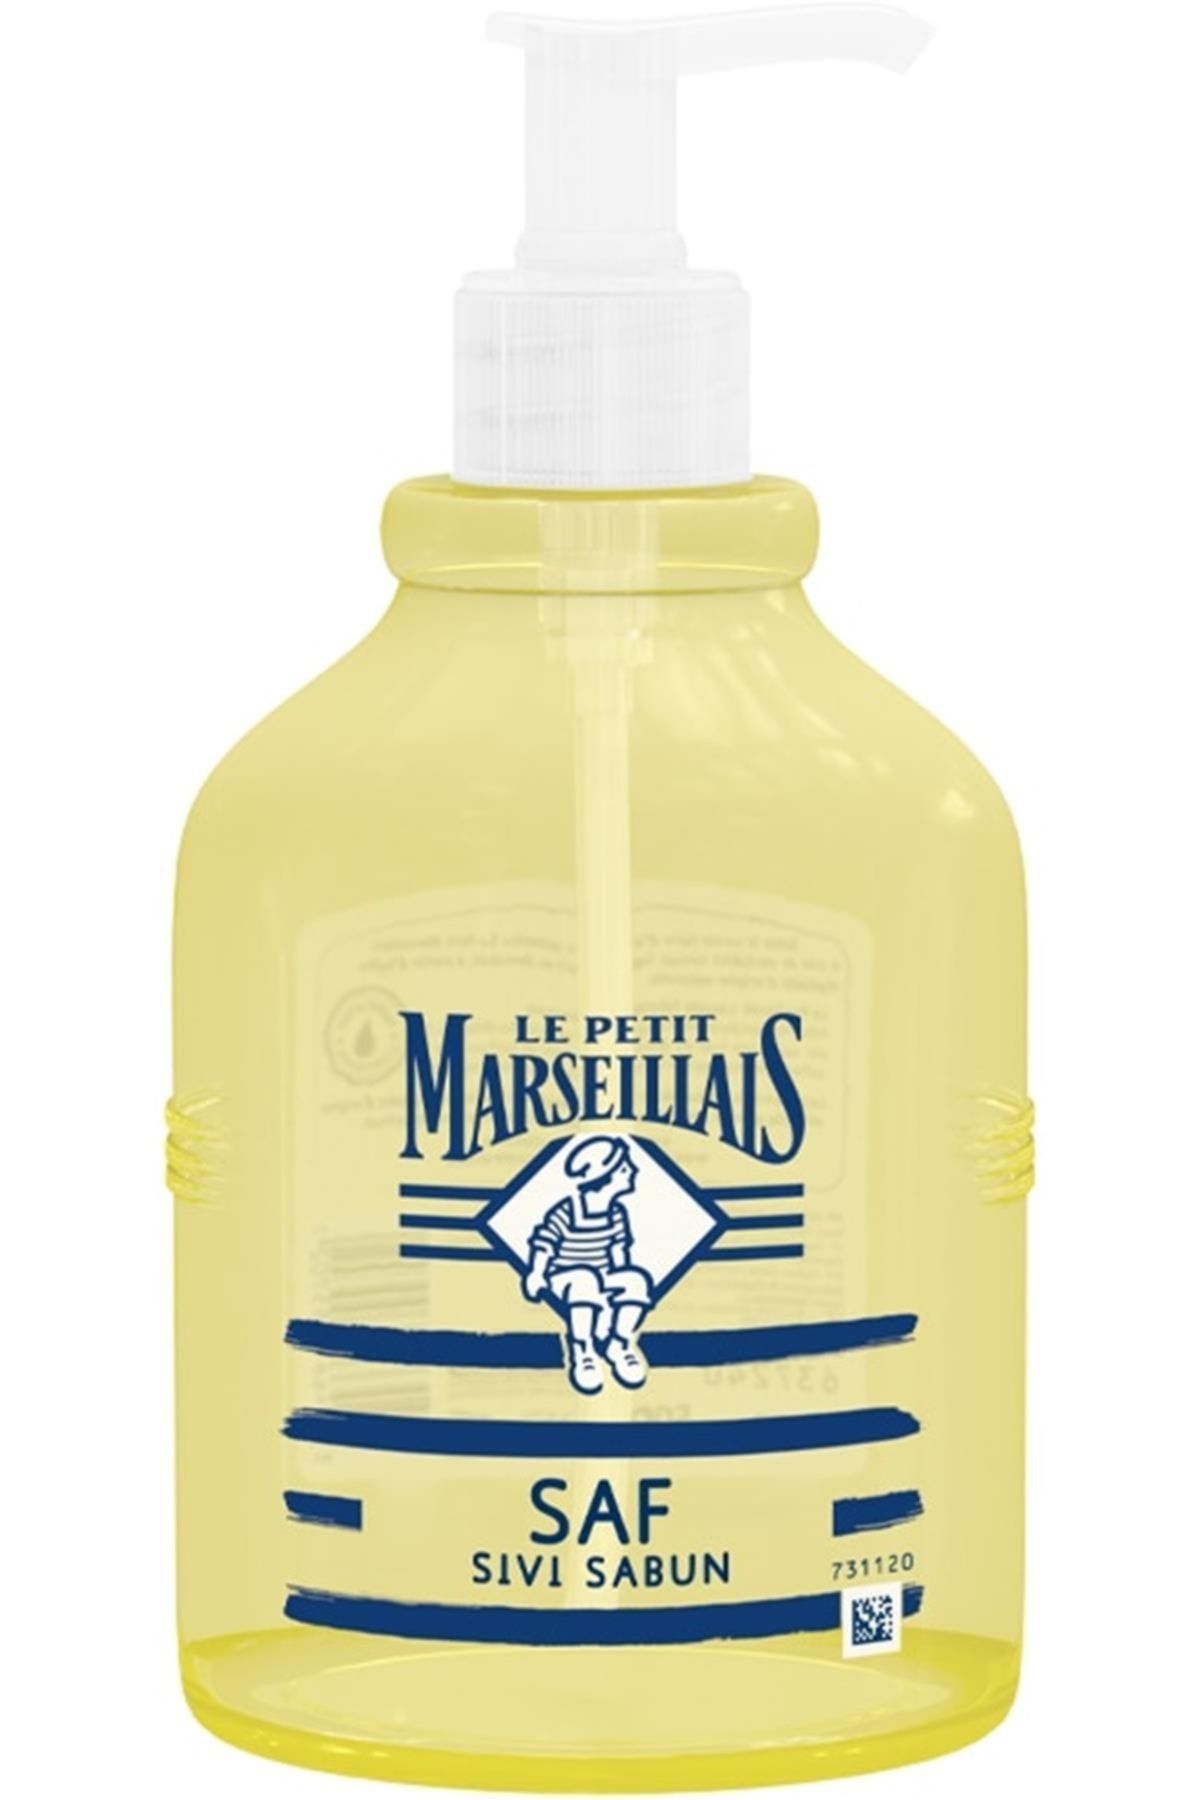 Le Petit Marseillais Marka: Zeytinyağı Saf Sıvı Sabun 500 Ml Kategori: Banyo Sabunu